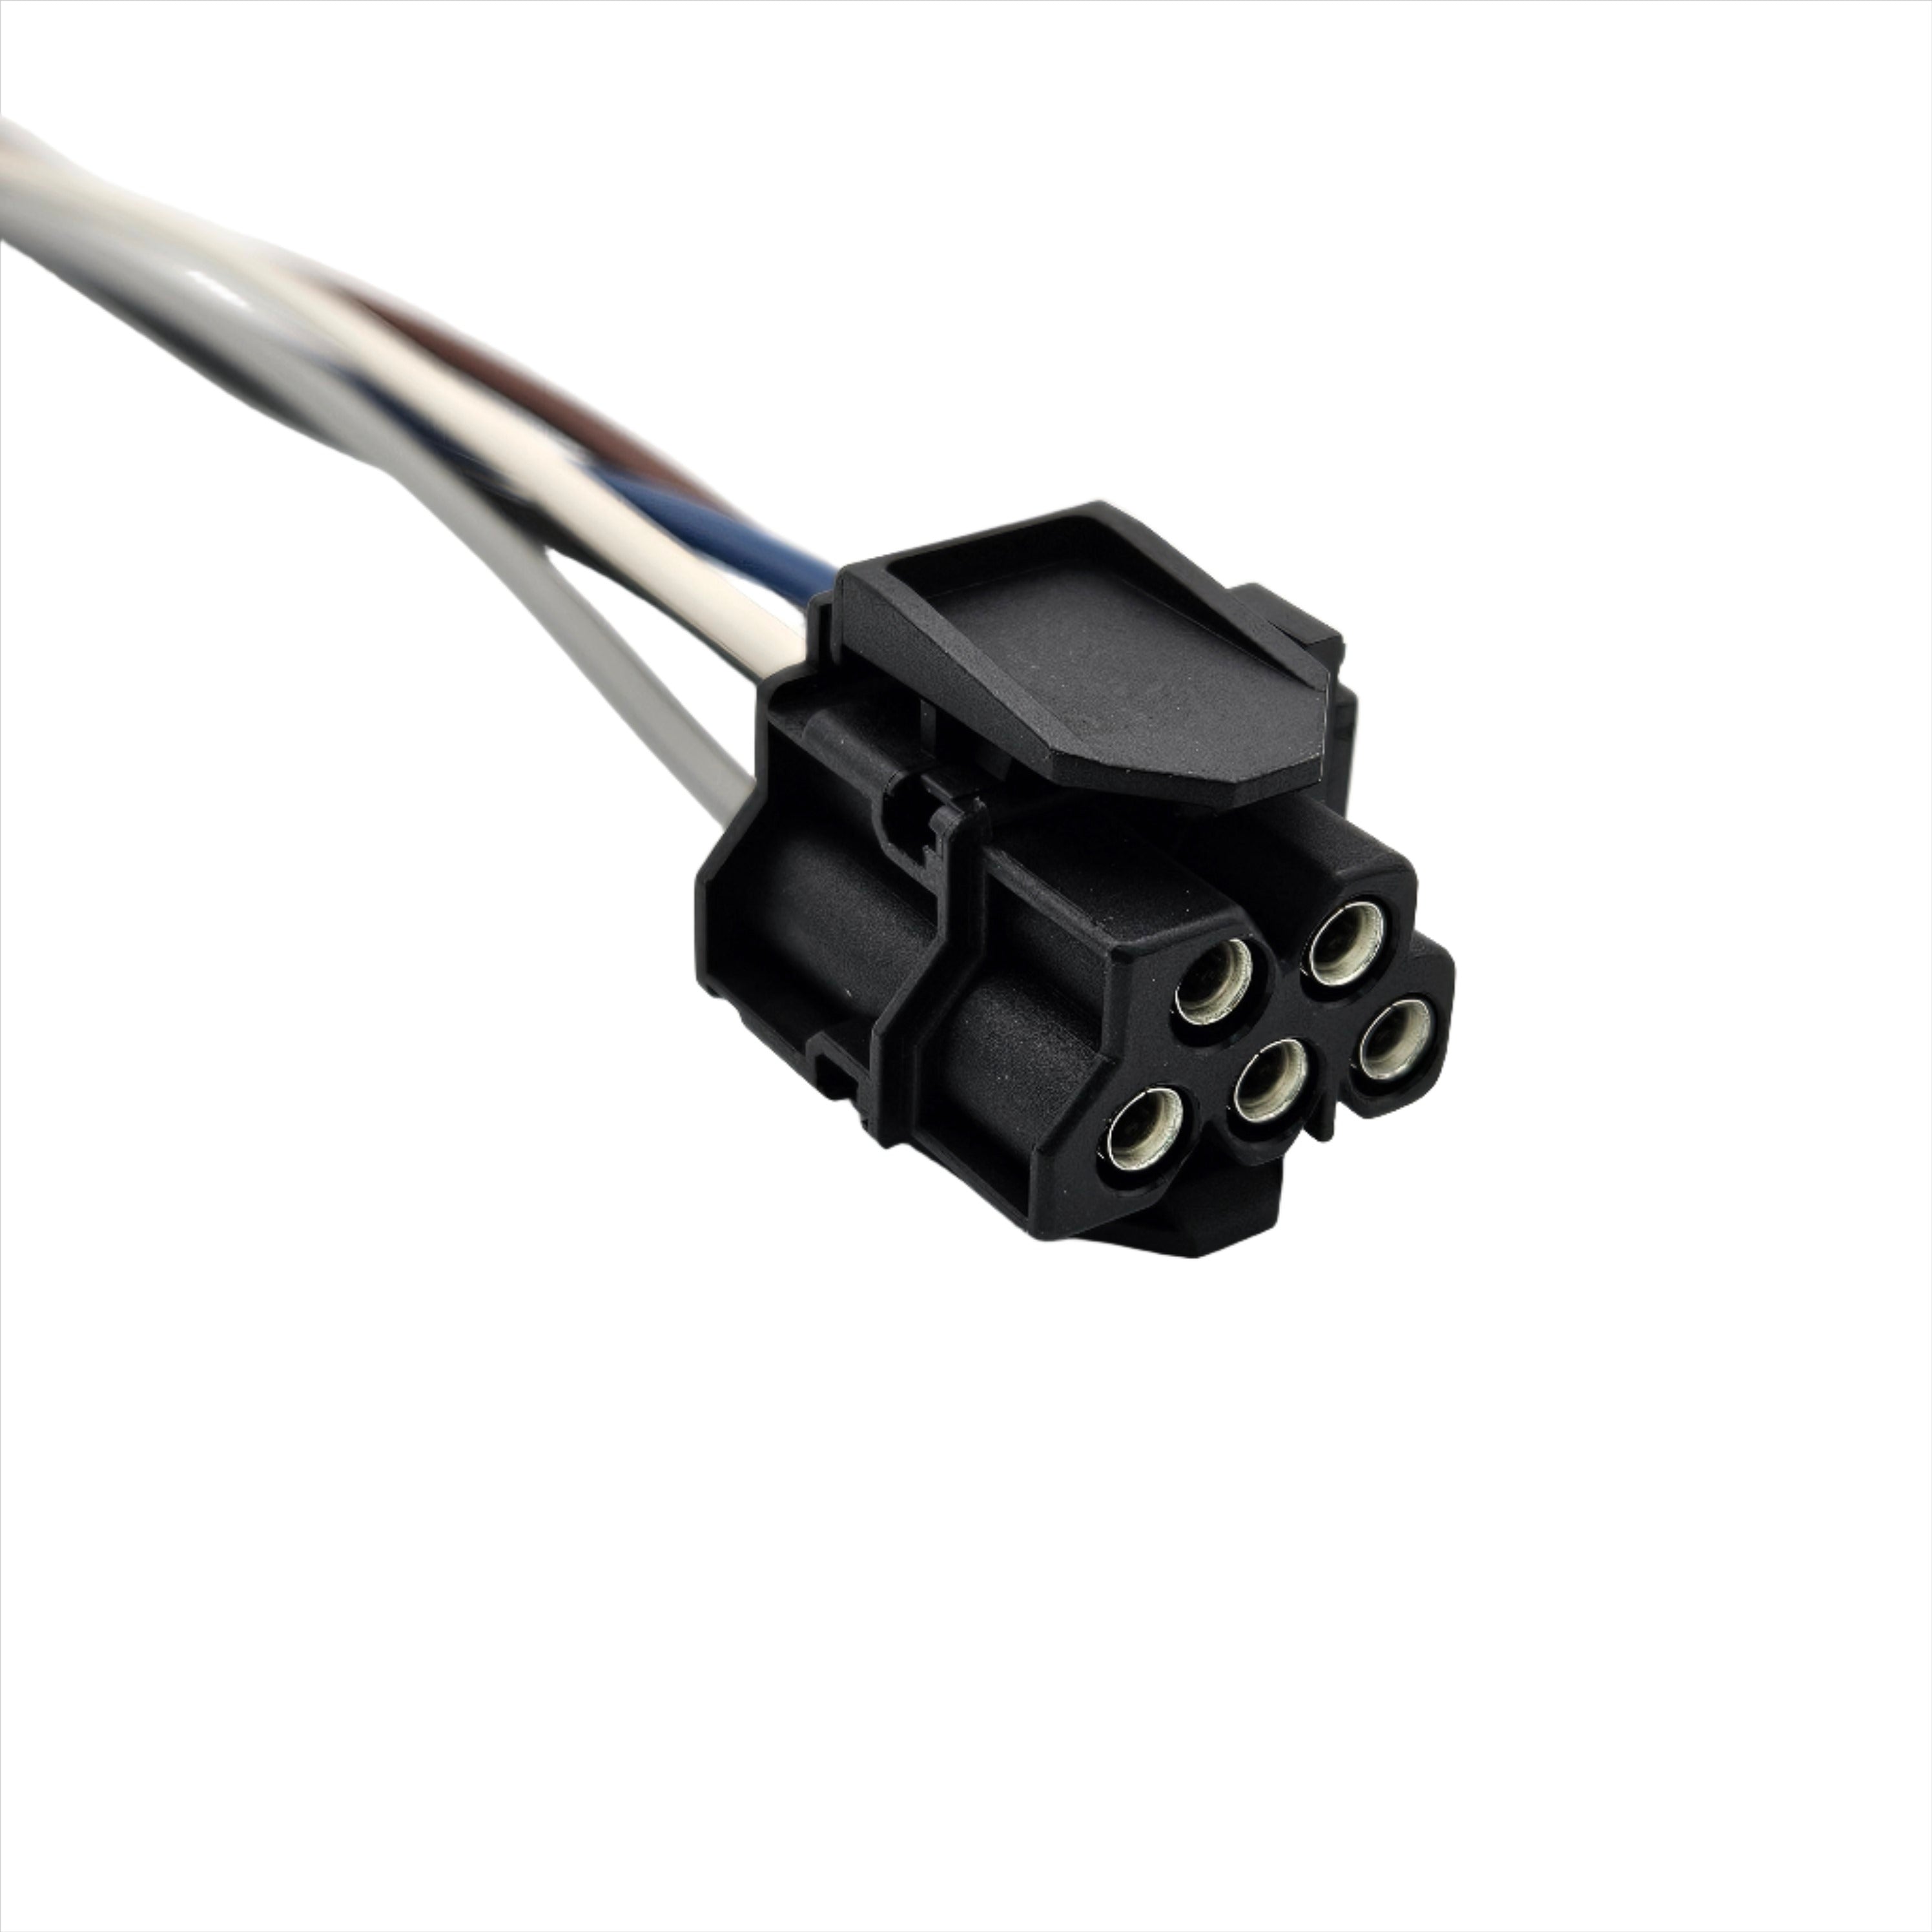 5 Pin Connector Wiring Harness Cable for Blower Motor Fan Heater Resistor 64116923204 fits B-MW E36 E46 E39 E83 E53 M3